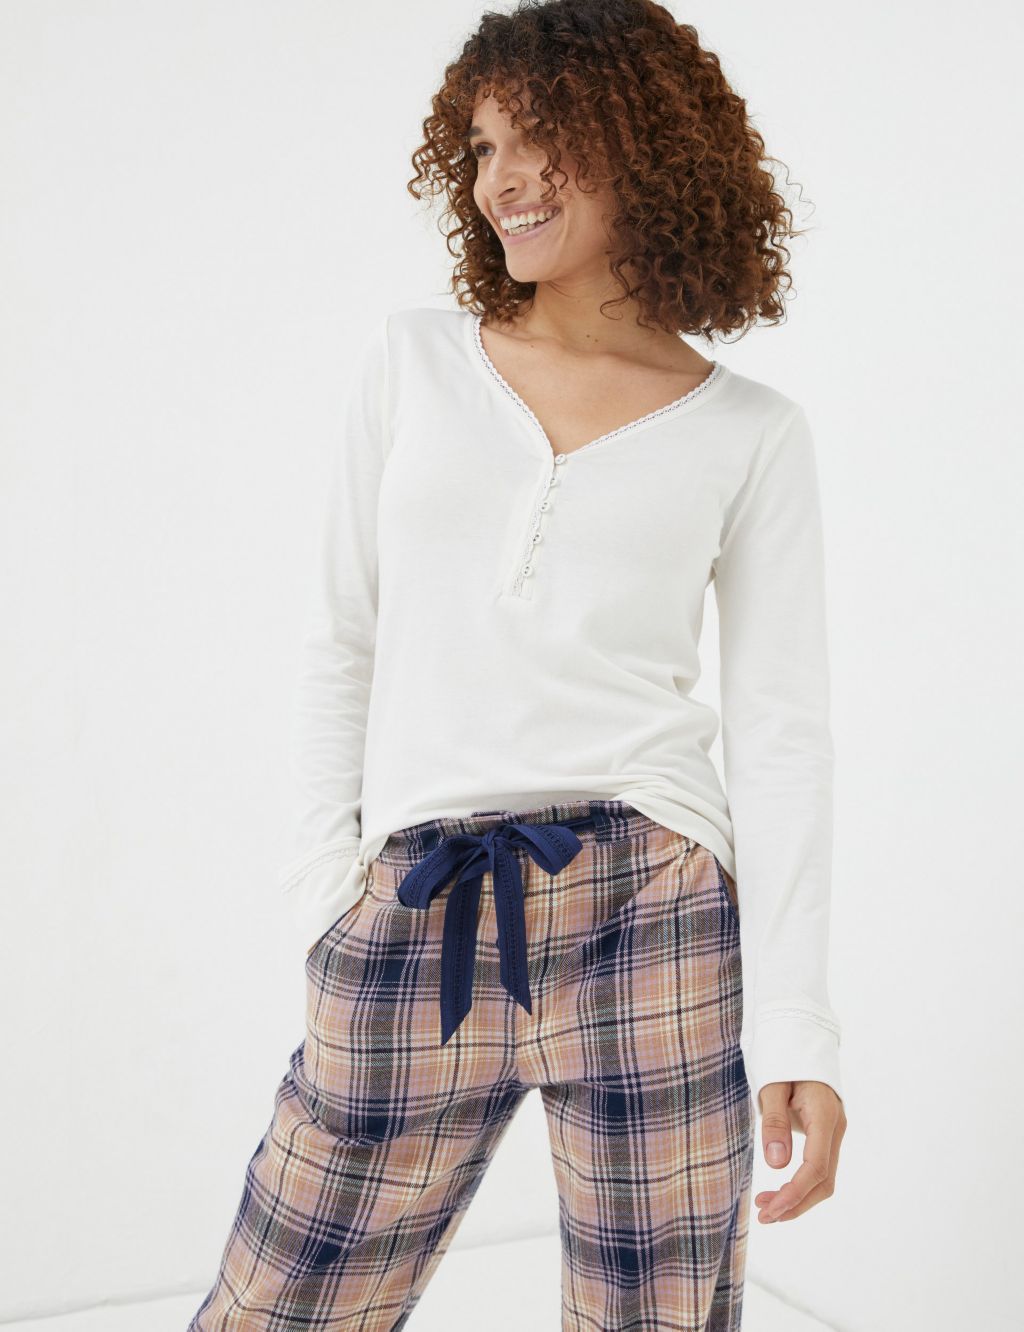 Cotton Modal Lace Trim Pyjama Top image 1